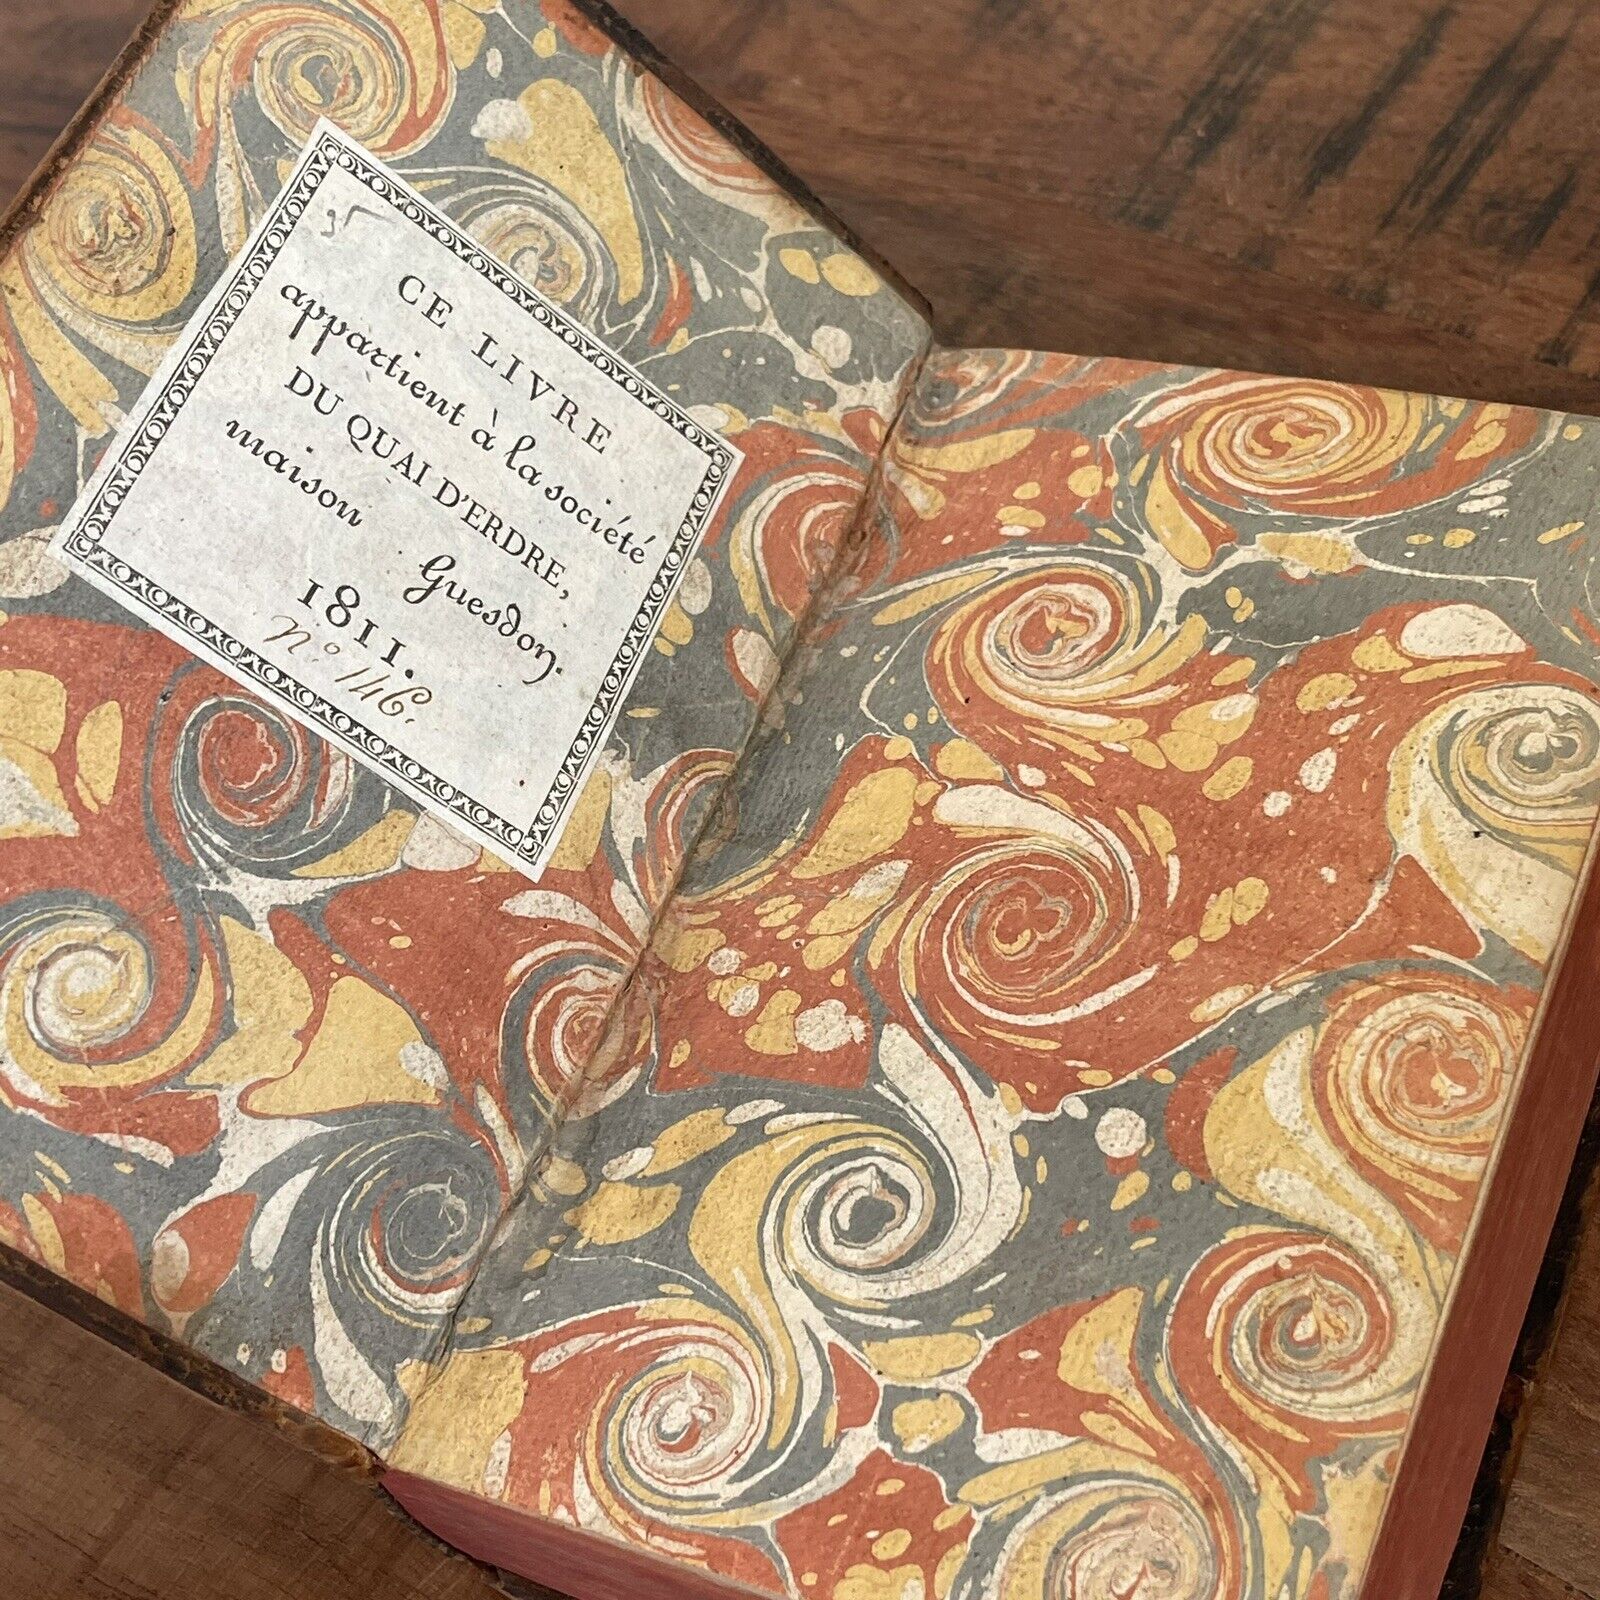 1772, Oeuvres Diverses Du Sr. Boileau Despreaux, altes Buch